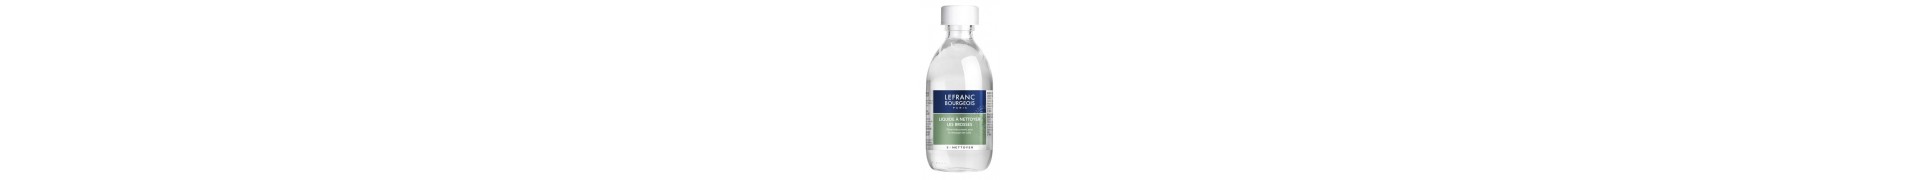 Liquide nettoyage LFRANC & BOURRGEOIS - (Pour Brosses) - F:250 ml